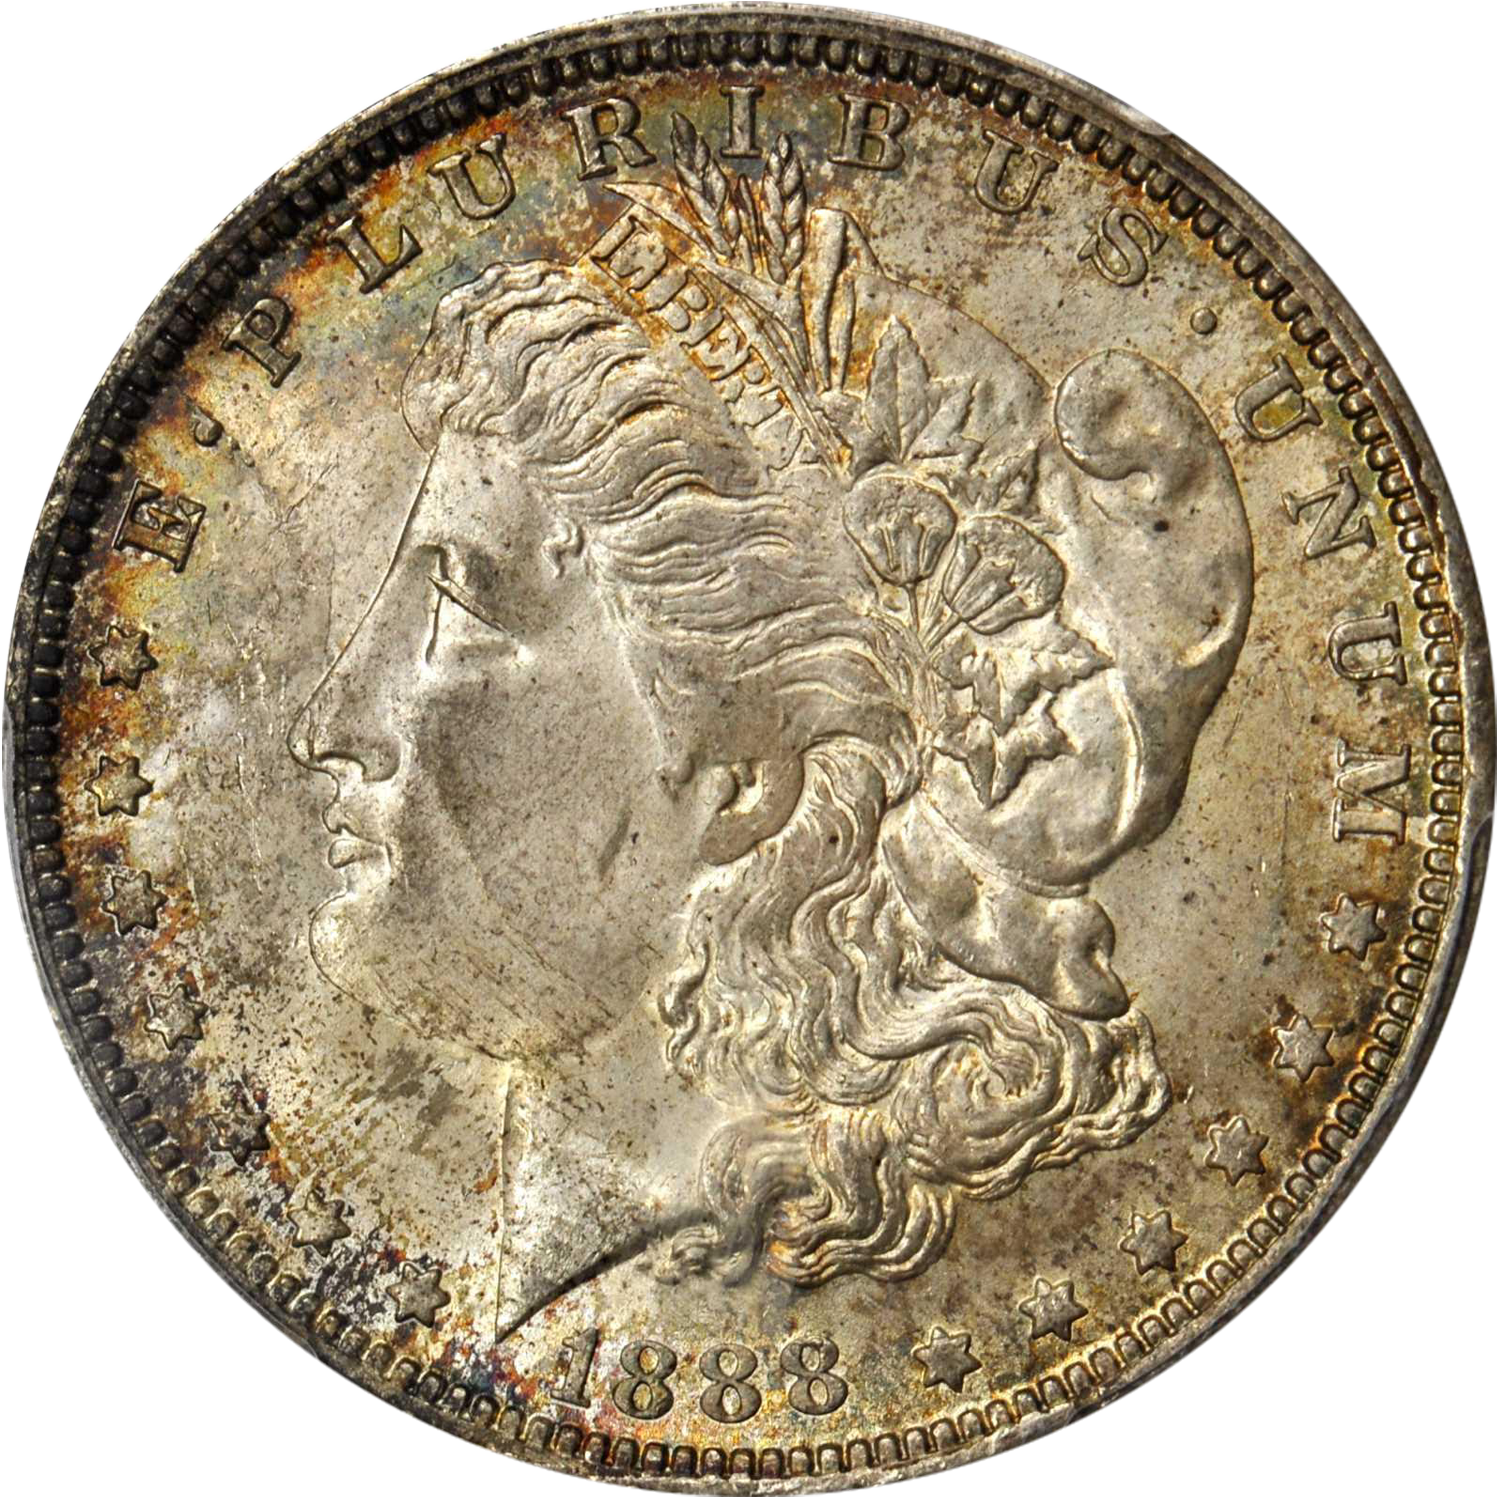 1888-o scarface morgan silver dollar value